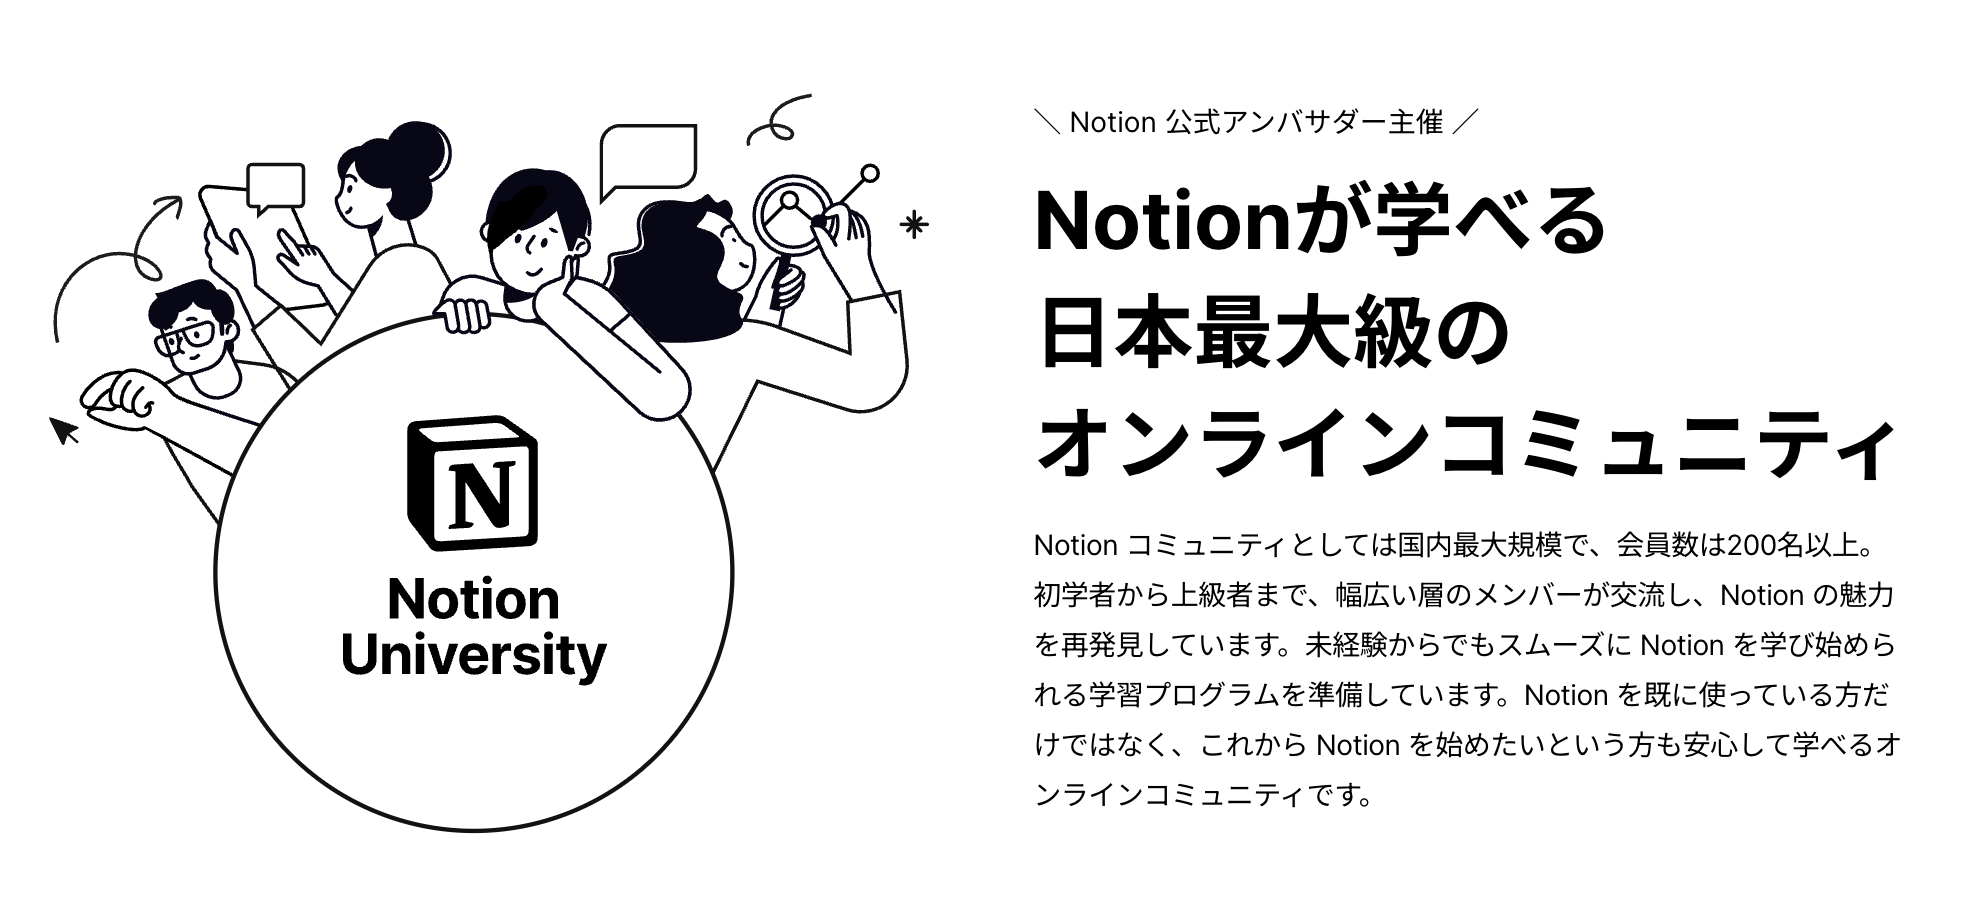 Notion が学べる日本最大級のオンラインコミュニティ「Notion 大学」